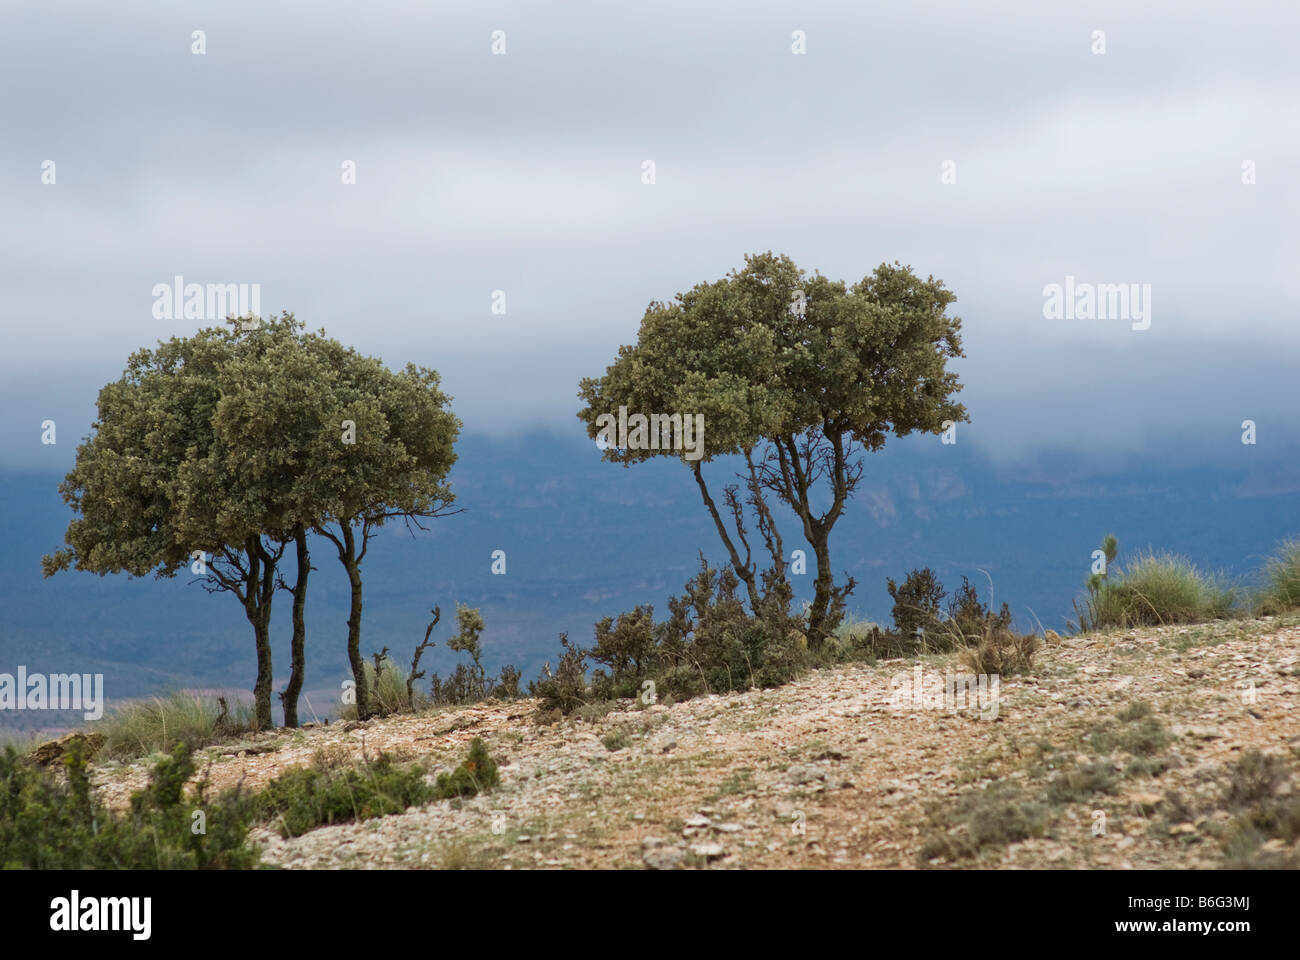 Landscape of trees in Almansa, province of Albacete, in the Castilla la Mancha region, Spain, Europe Stock Photo